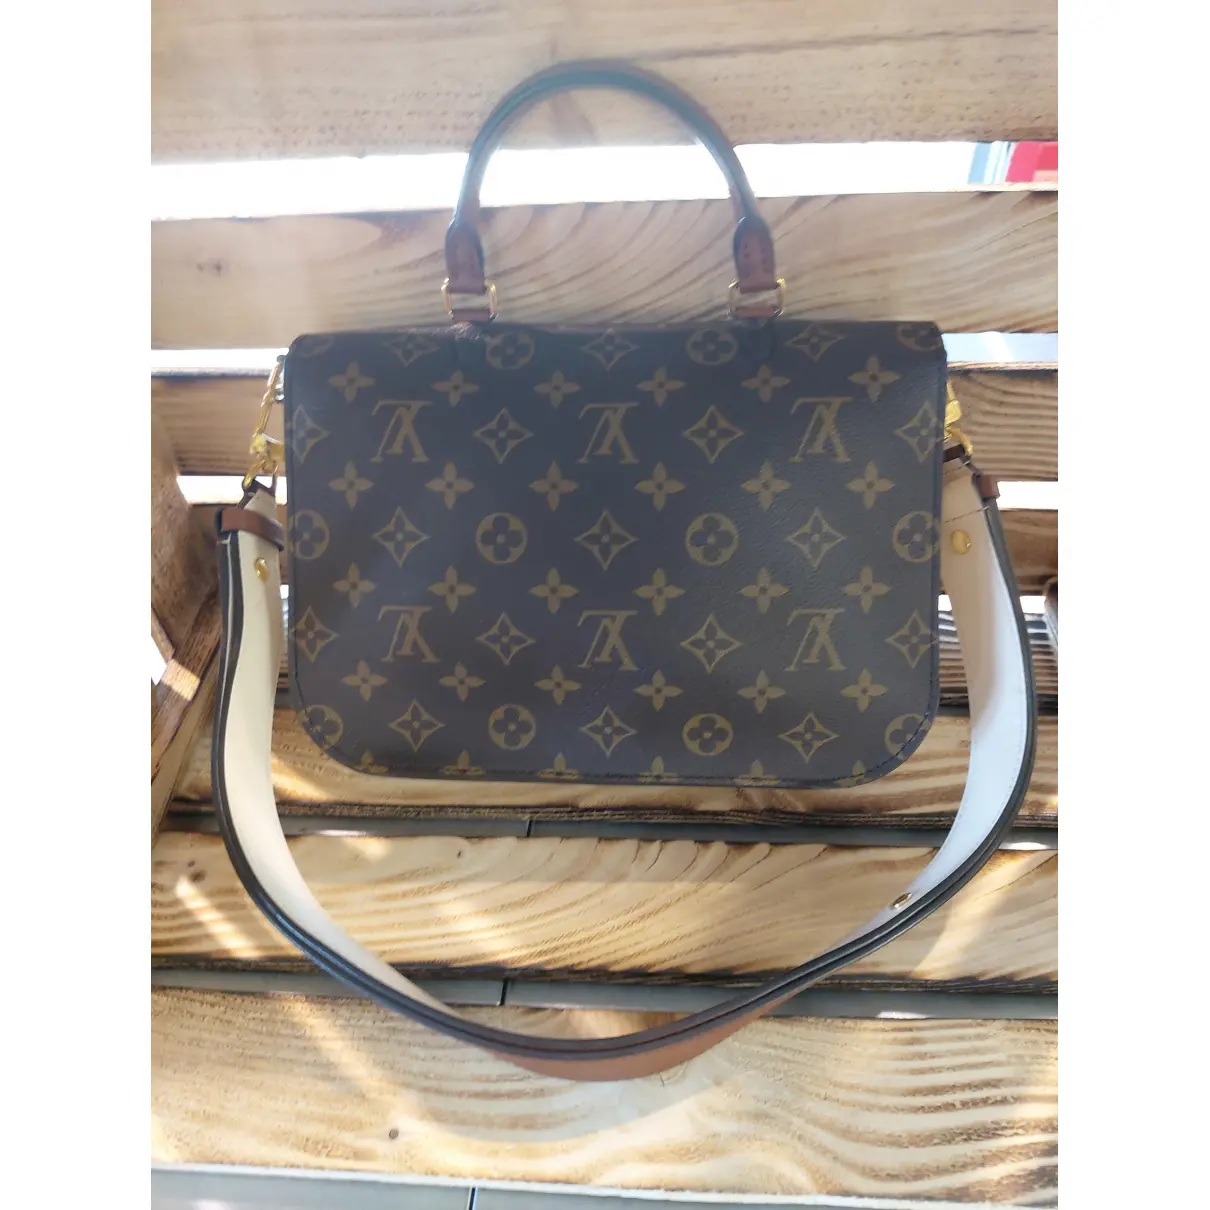 Buy Louis Vuitton Vaugirard leather handbag online